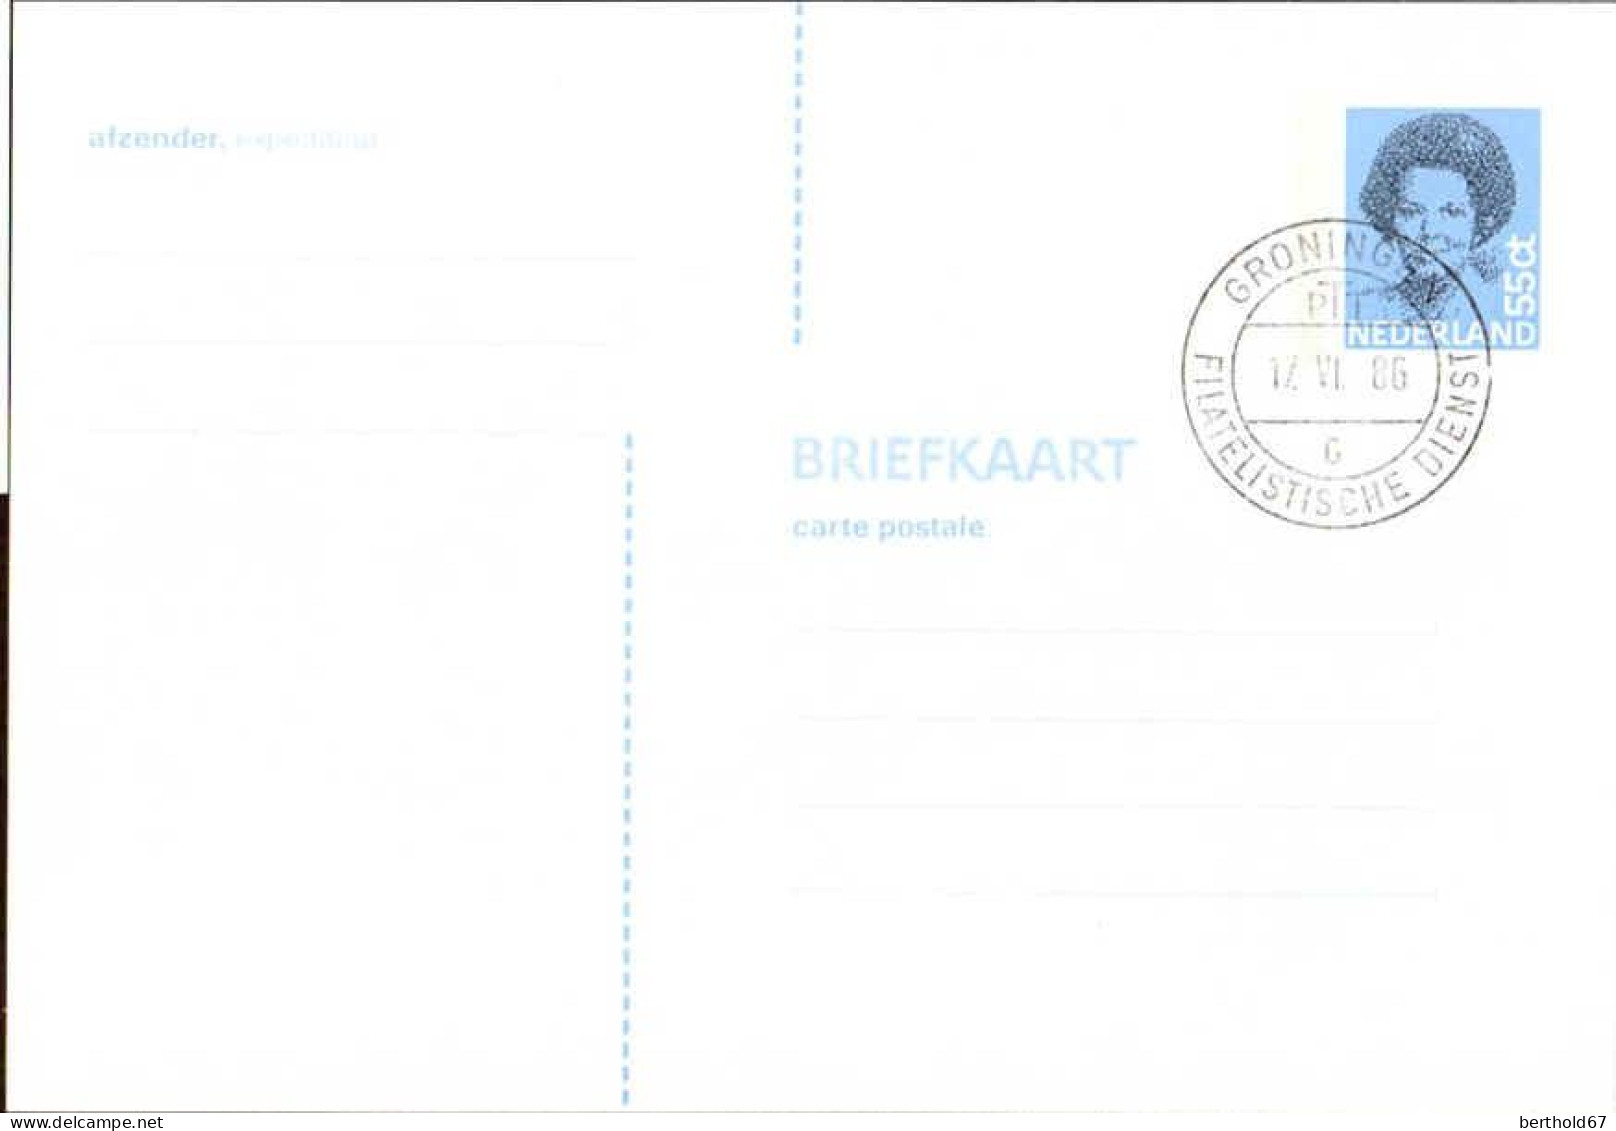 Pays-Bas Entier-P Obl (31) Briefkaart Reine Beatrix 148*102 55c (TB Cachet à Date) Bande Phosphore 3x25mm - Postal Stationery